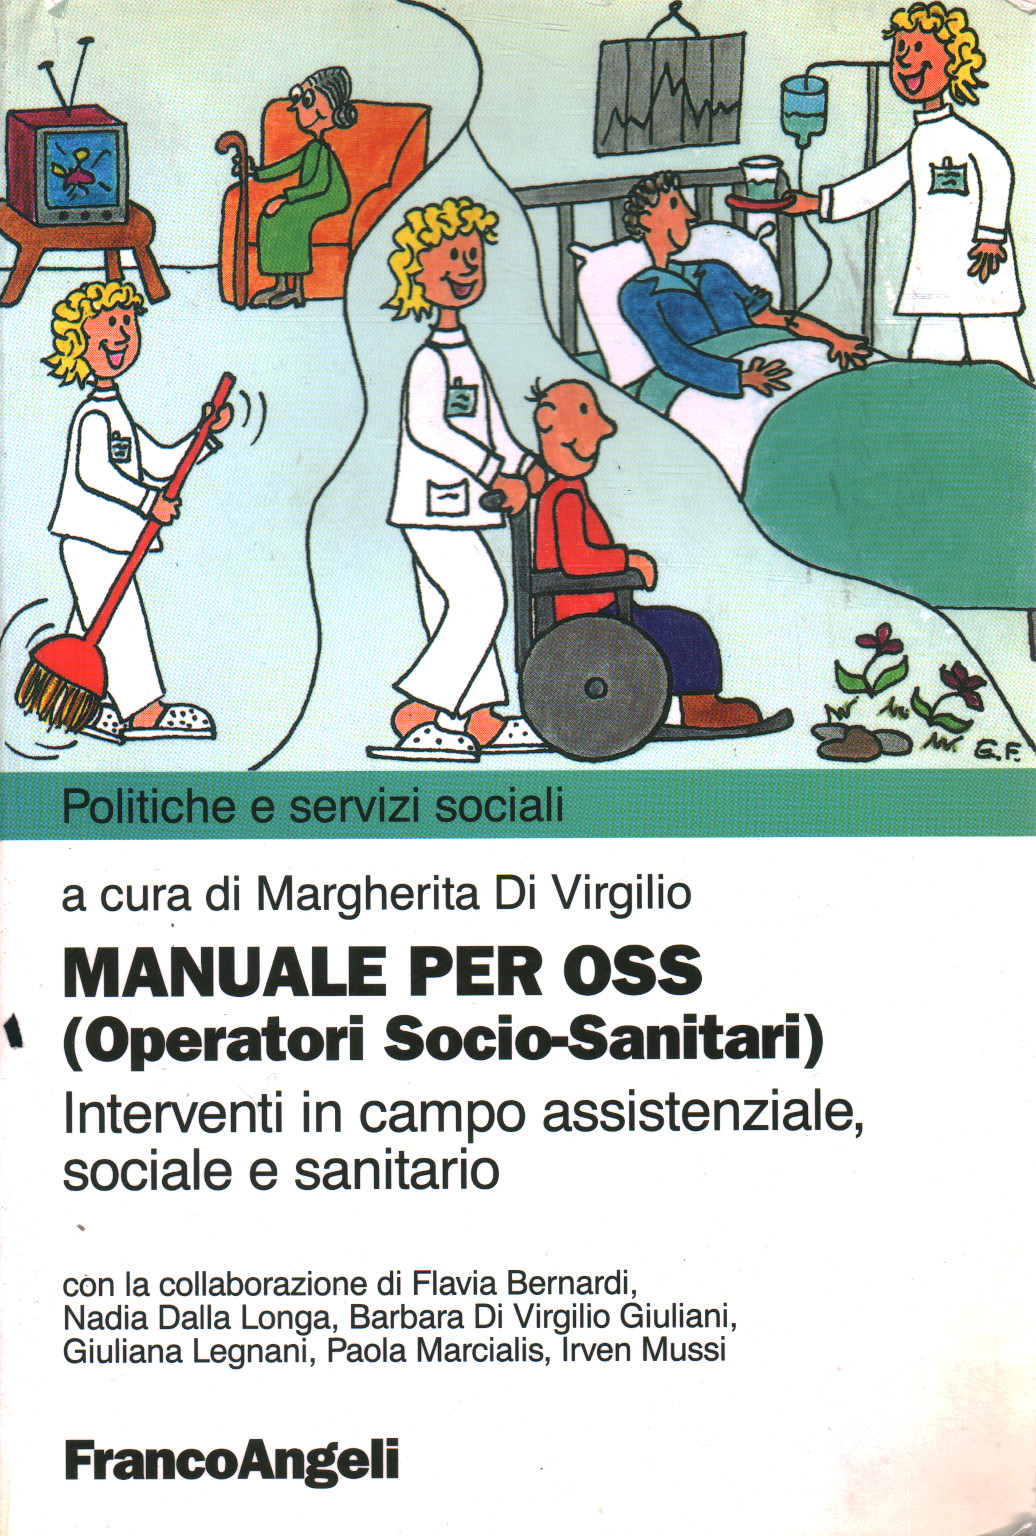 Manual para la OSS (Socio-sanitario), s.una.